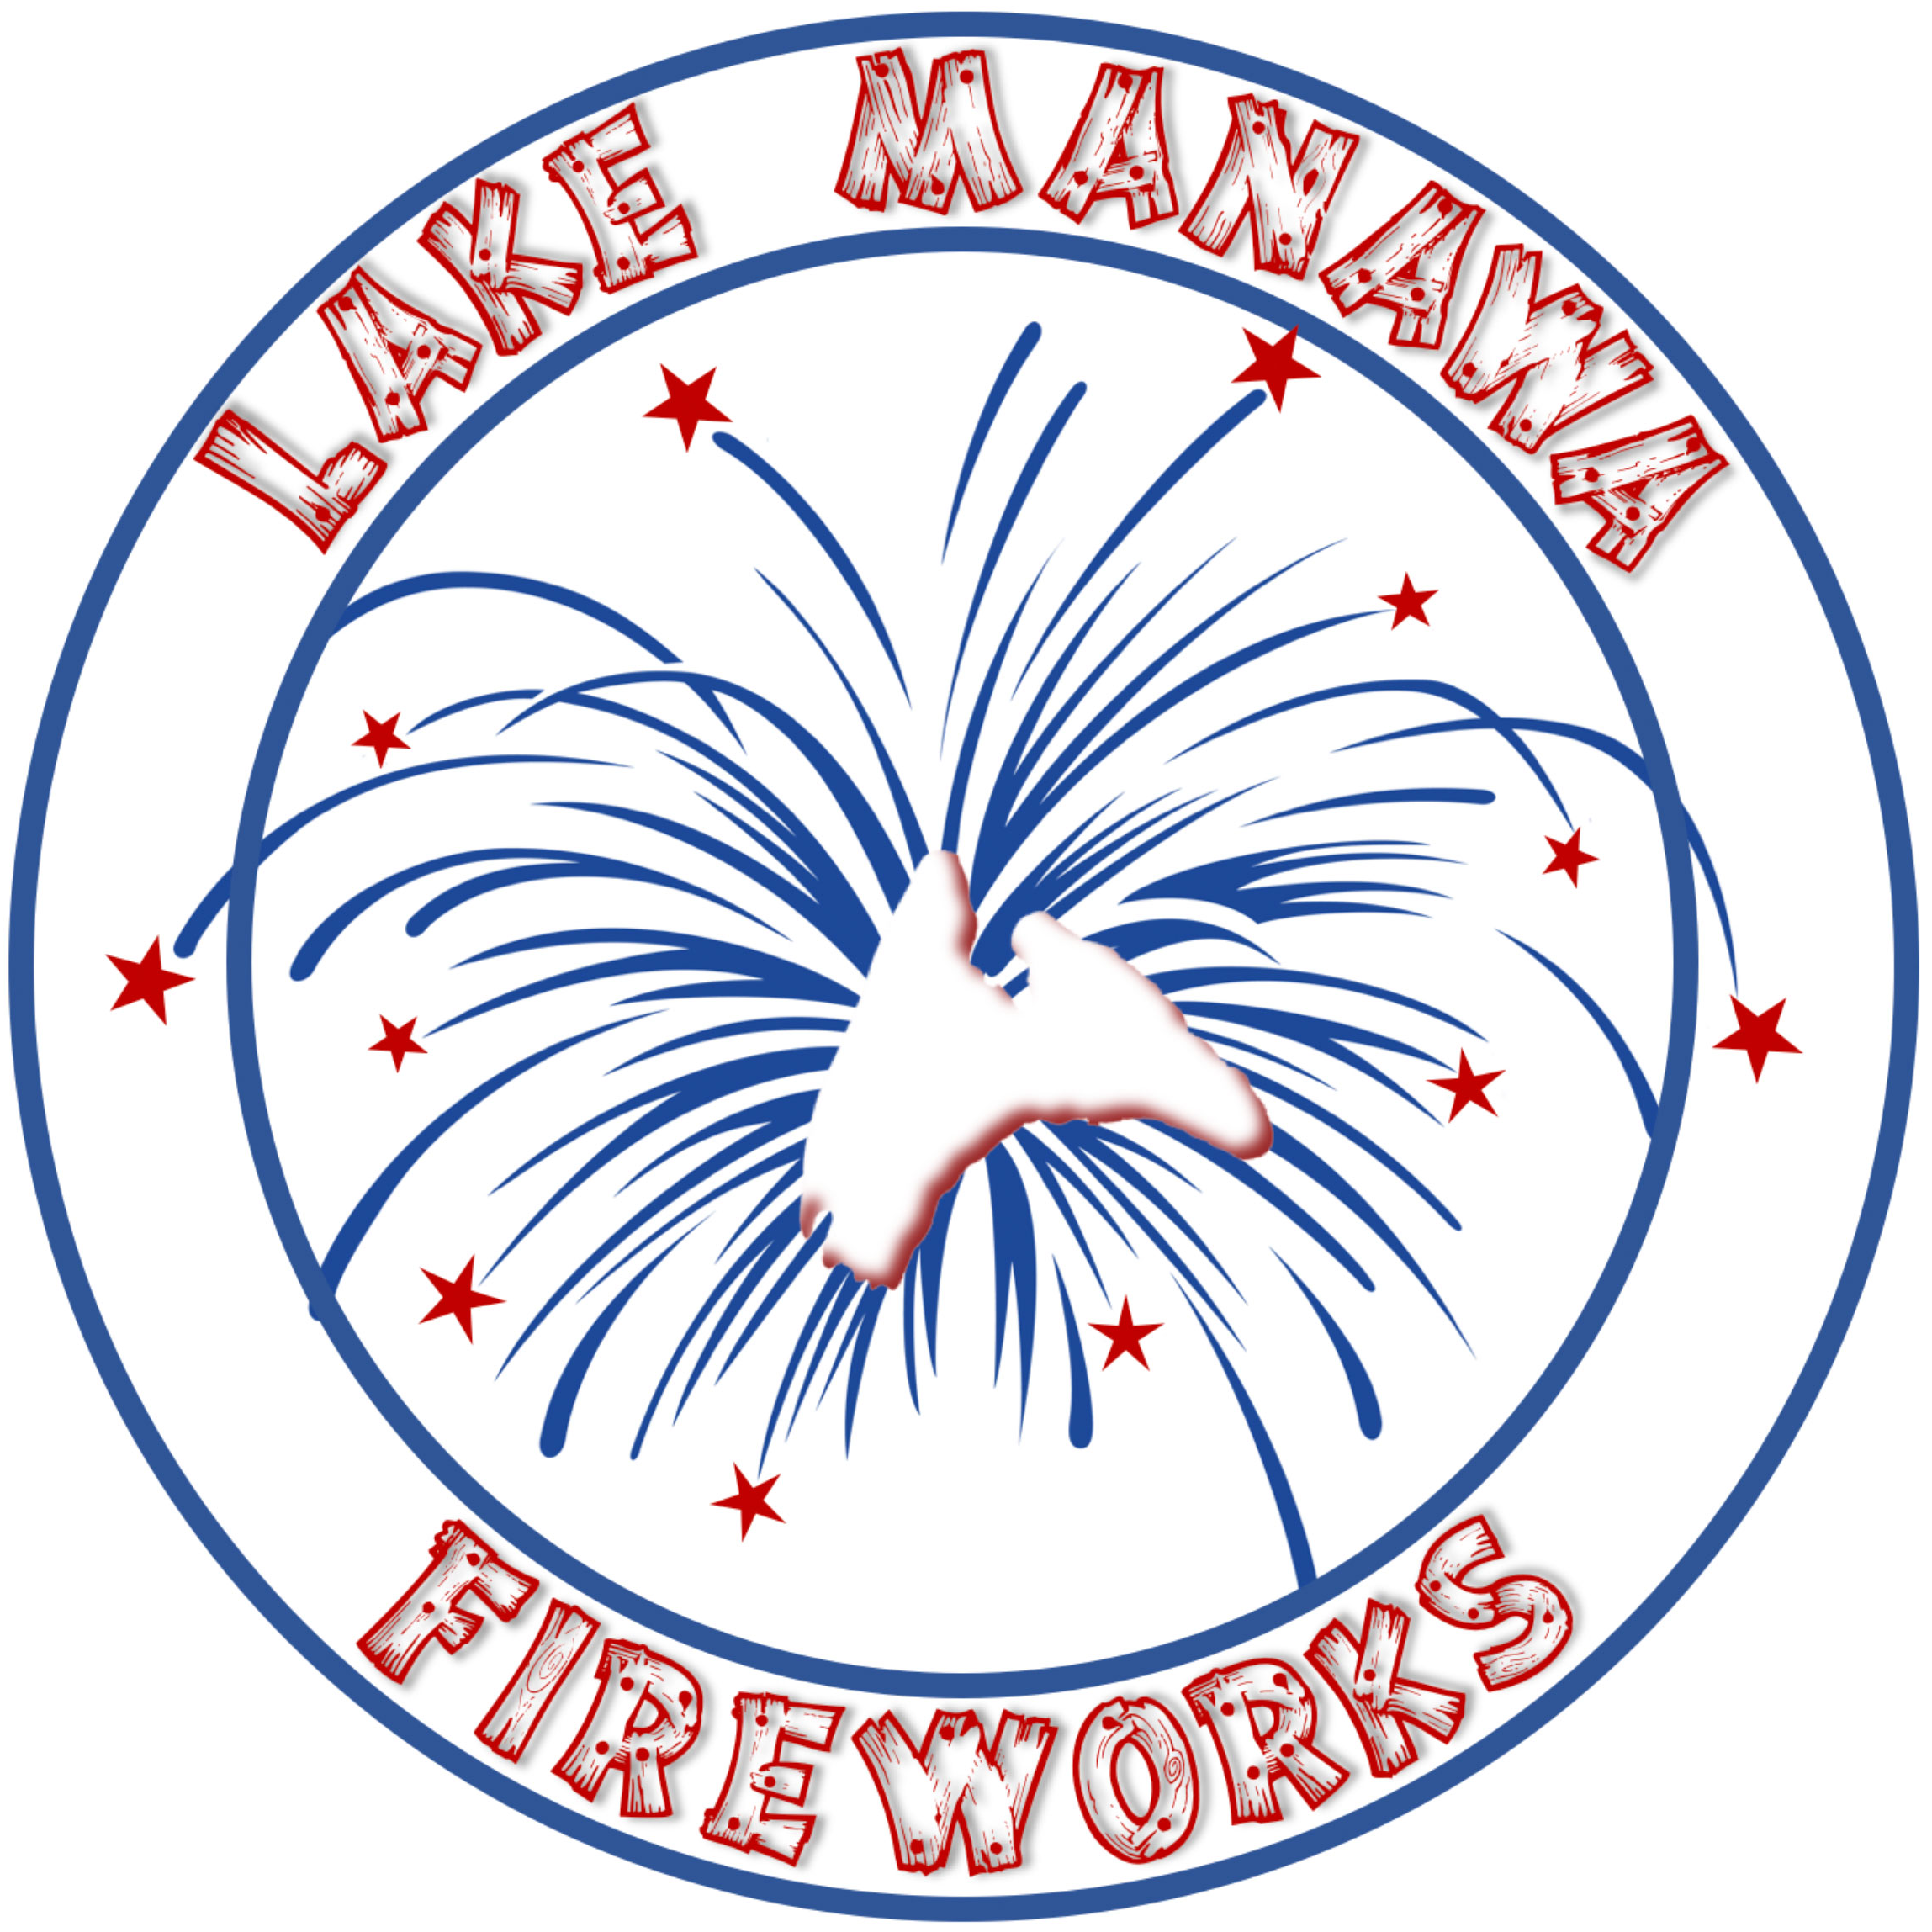 Lake Manawa Fireworks logo